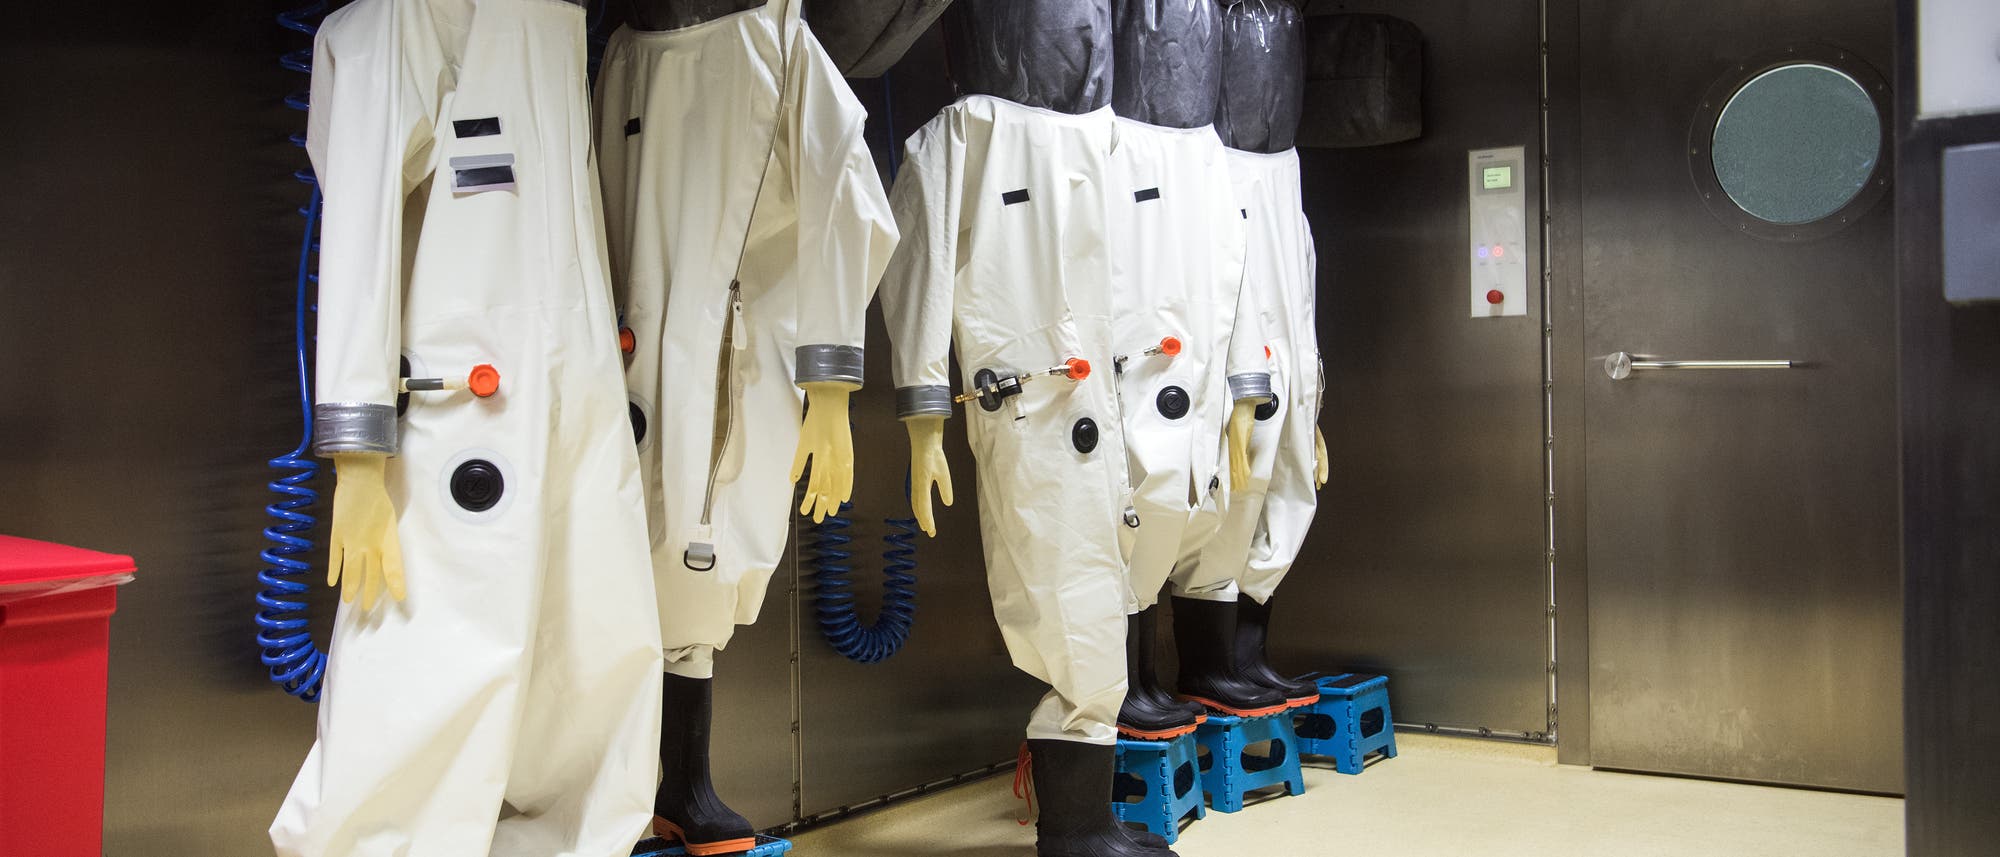 Schutzanzüge hängen im Anzugraum des S4-Labors im Robert Koch-Institut (RKI). In dem Labor der höchsten Schutzstufe vier können Mitarbeiterinnen und Mitarbeiter hochansteckende, lebensbedrohliche Krankheitserreger wie Ebola-, Lassa- oder Nipah-Viren sicher untersuchen. (Archiv)